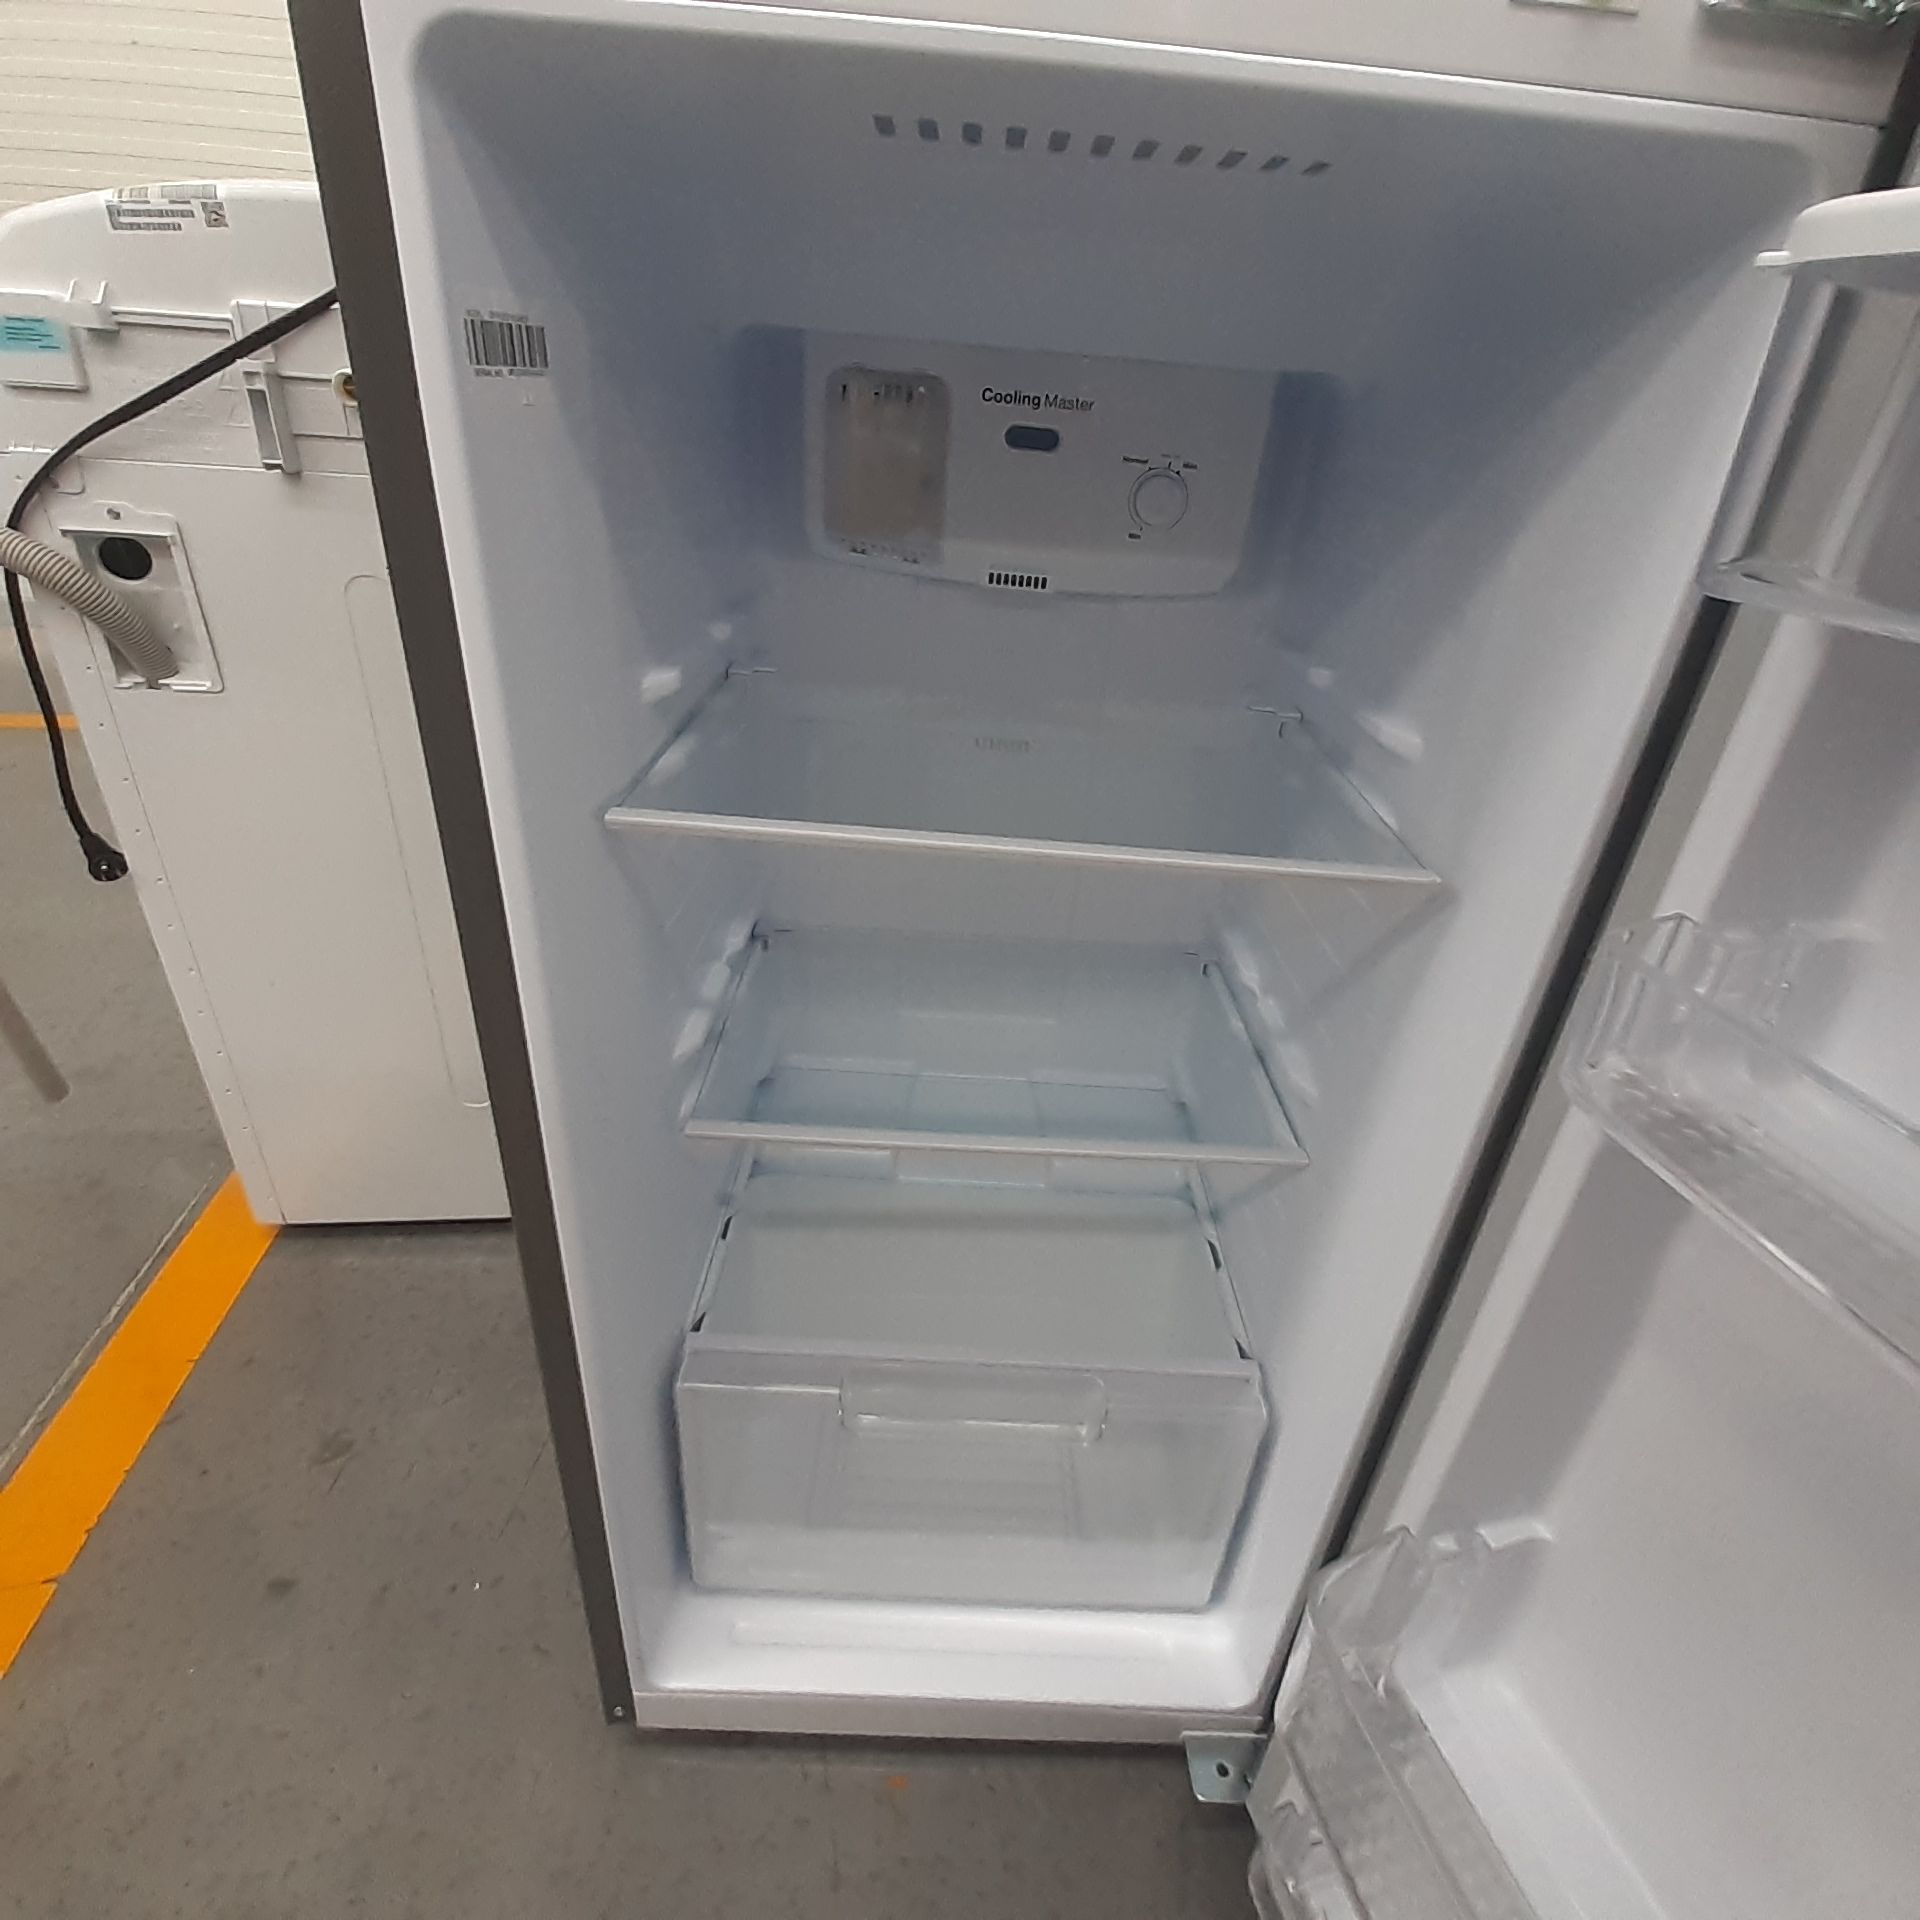 Lote De 2 Refrigeradores: 1 Refrigerador Marca Mabe, 1 Refrigerador Marca Winia, Distintos Modelos - Image 15 of 23